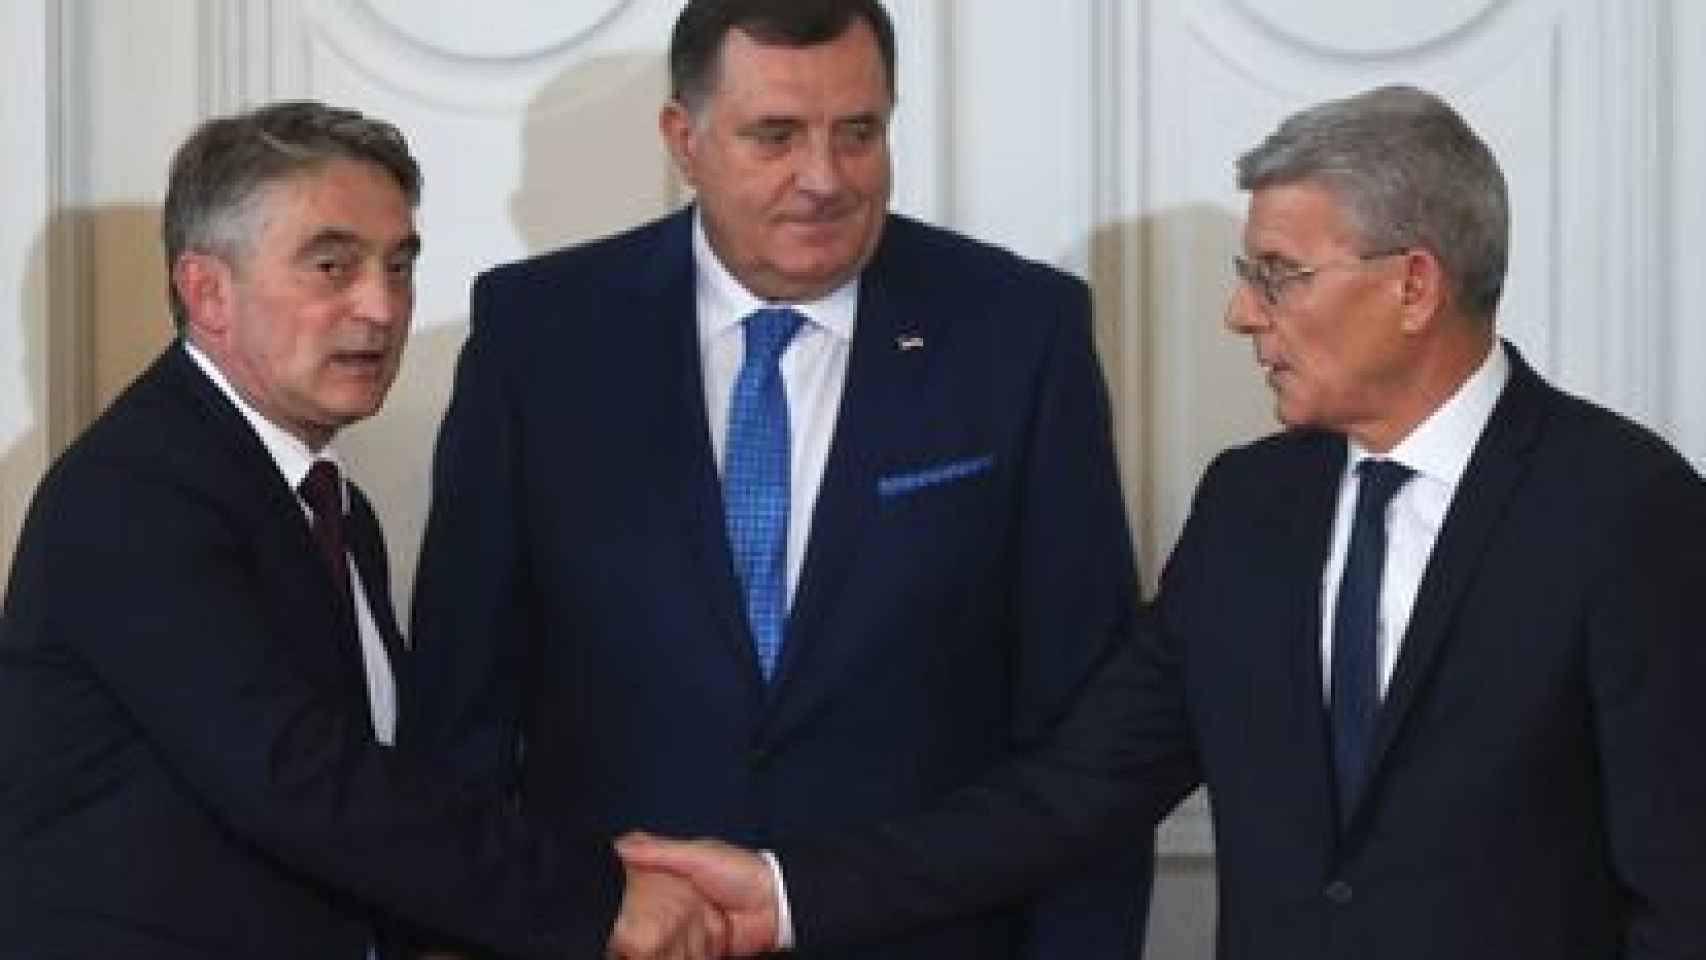 Los tres miembros de la presidencia de Bosnia, Zeljko Komsic, Milorad Dodik y Sefik Dzaferovic (de izquierda a derecha).